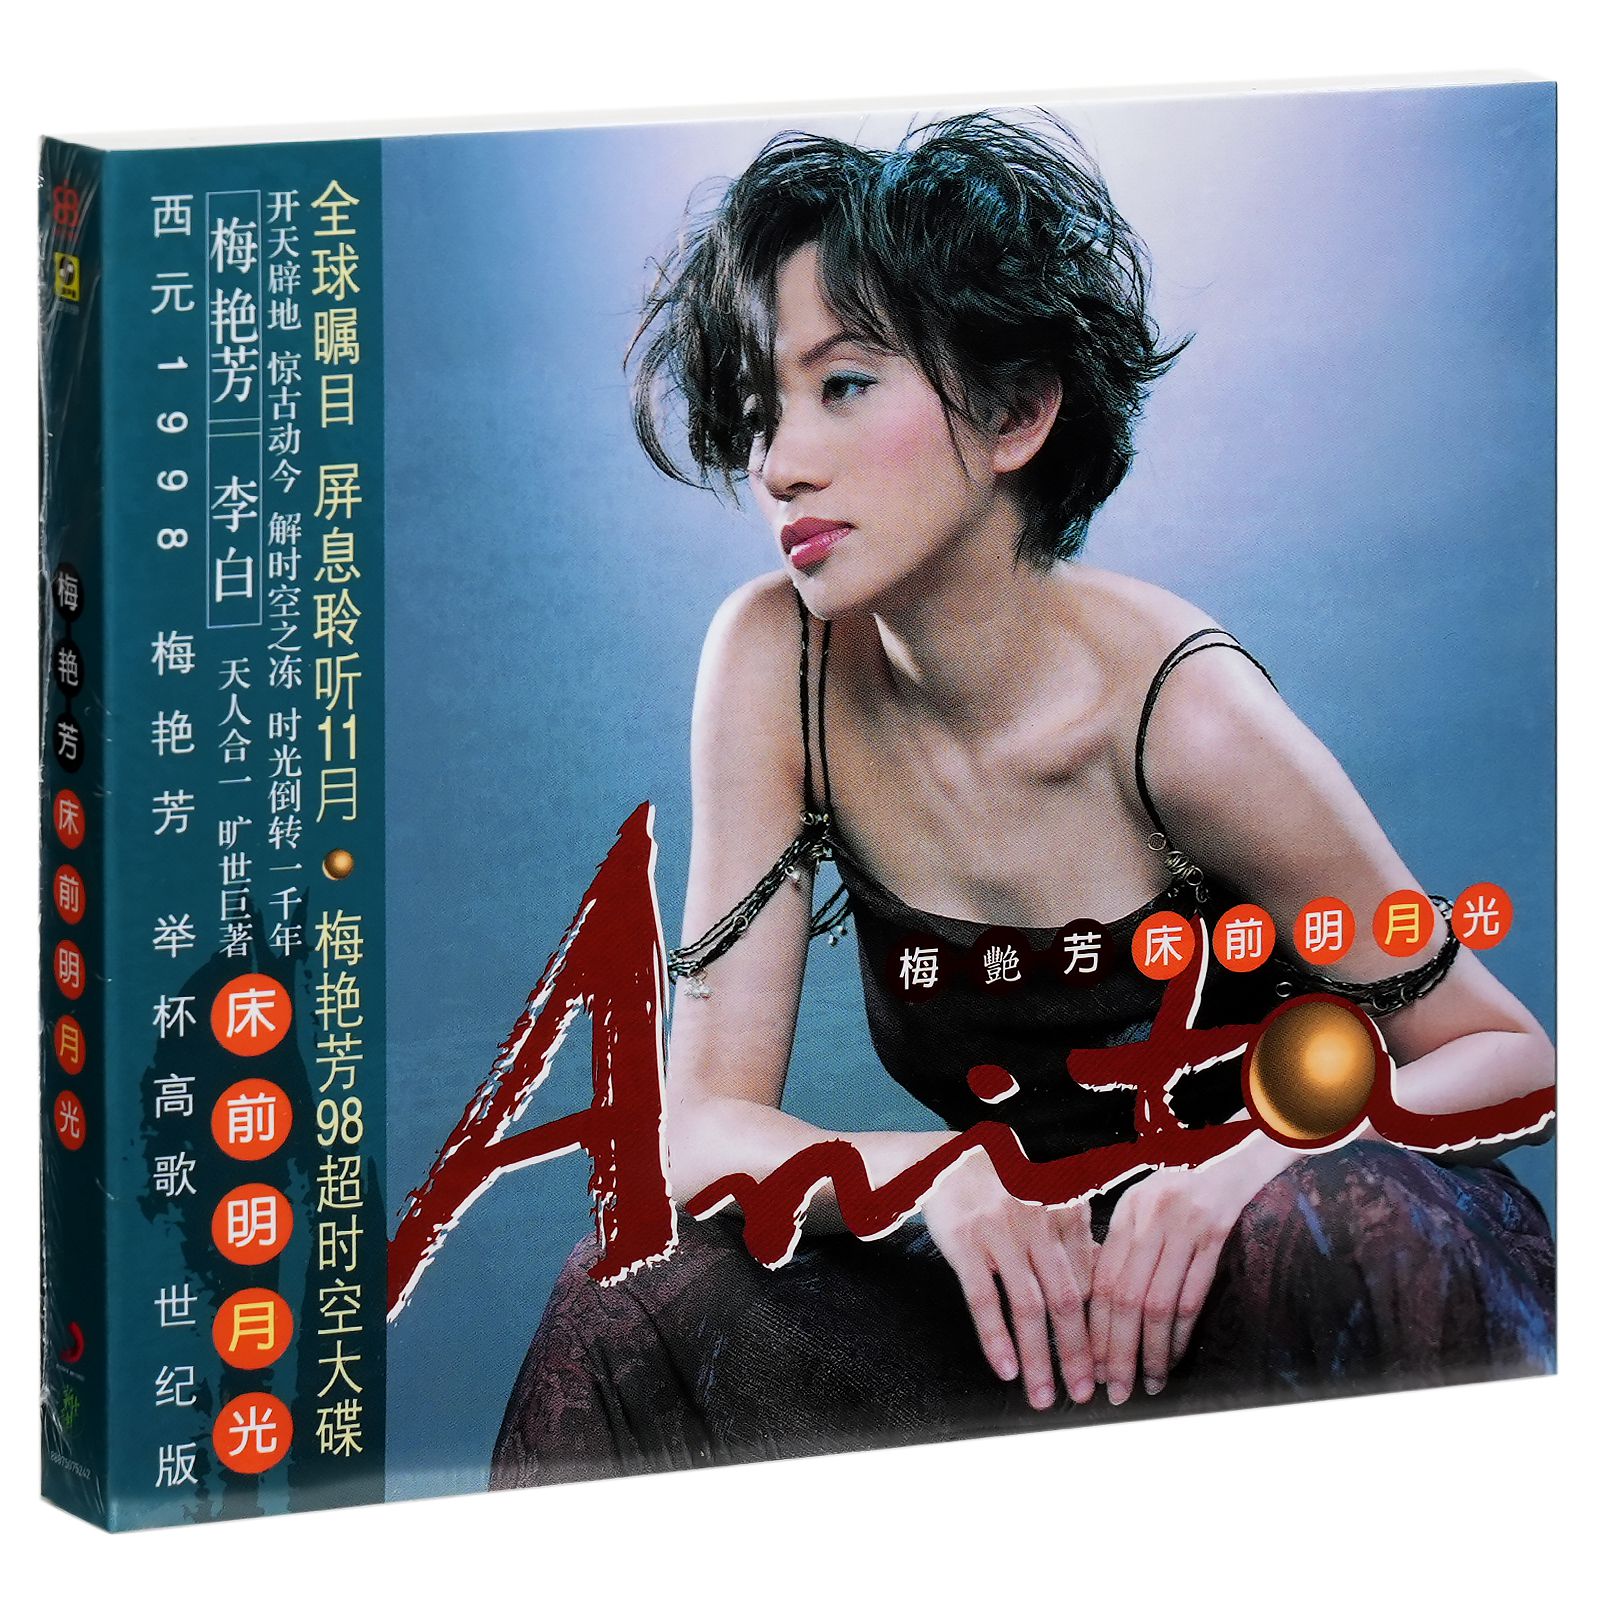 正版梅艳芳 床前明月光 1998专辑唱片CD+写真歌词册+折叠海报